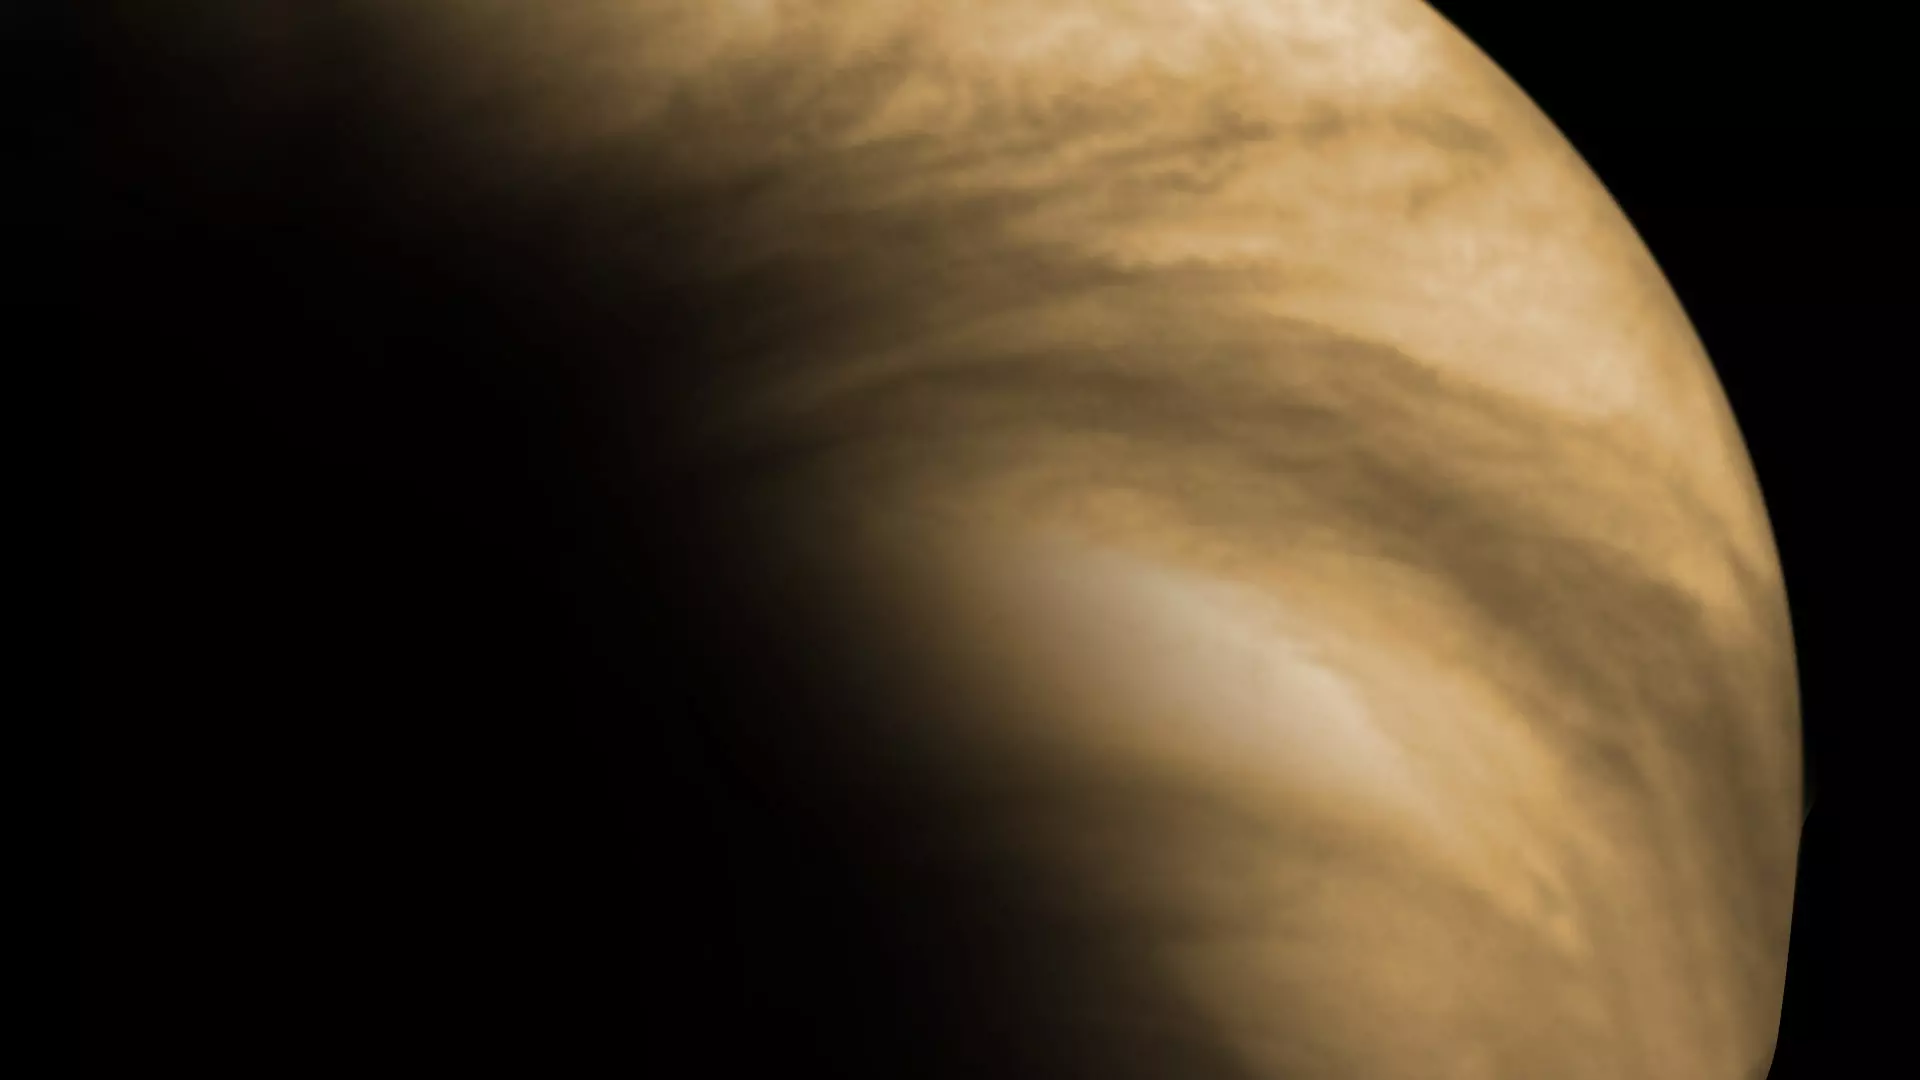 Las nubes ricas en ácido sulfúrico que cubren la superficie del planeta Venus se muestran en esta imagen tomada con luz ultravioleta por el telescopio espacial Hubble.